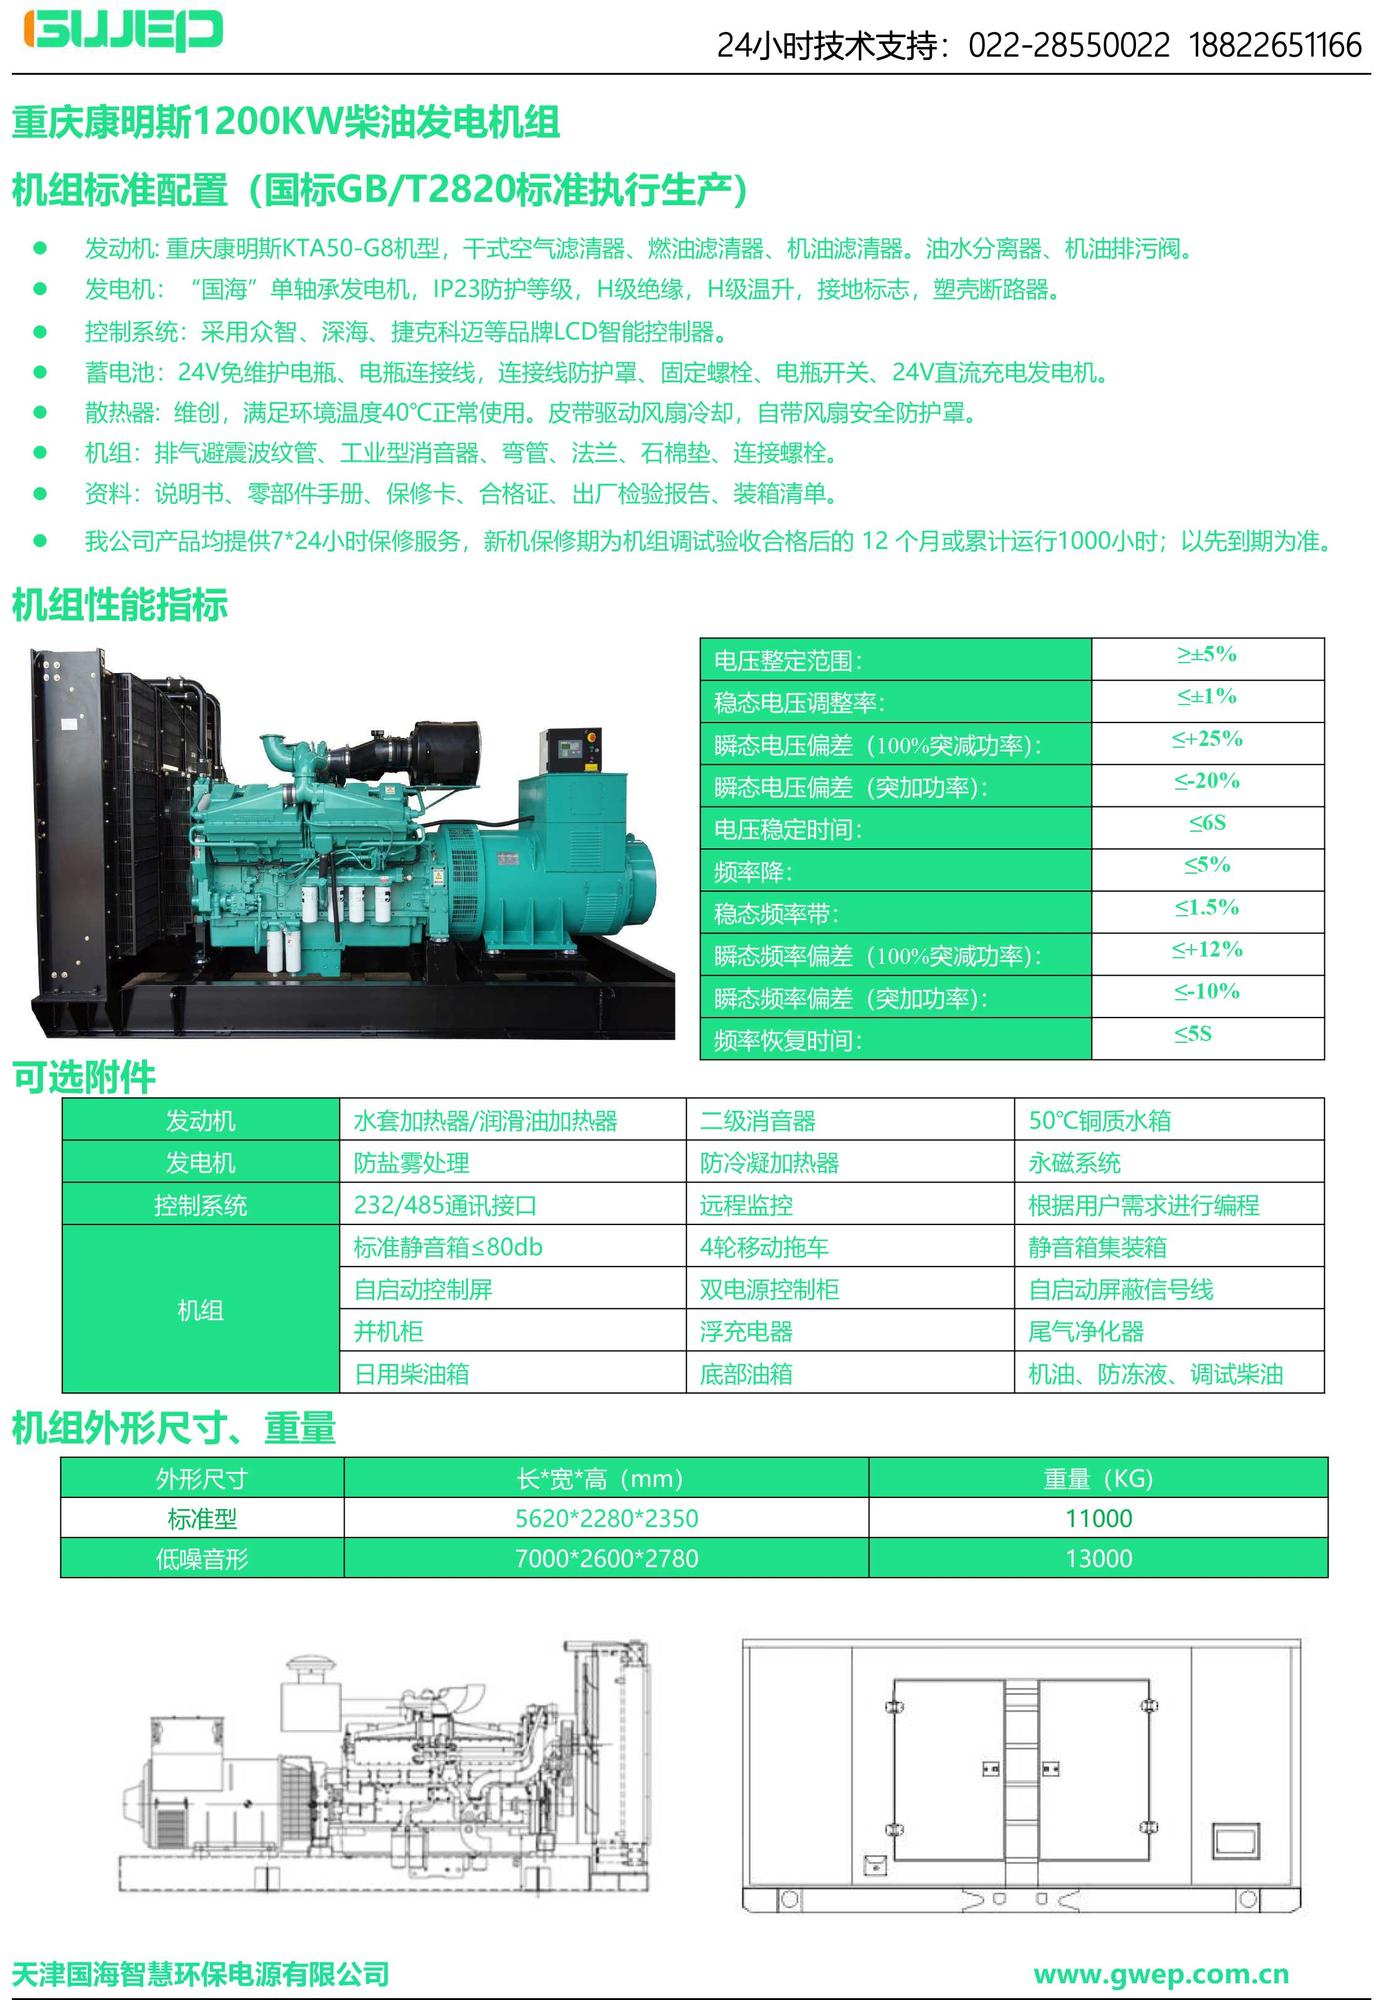 康明斯1200KW发电机组技术资料-1.jpg